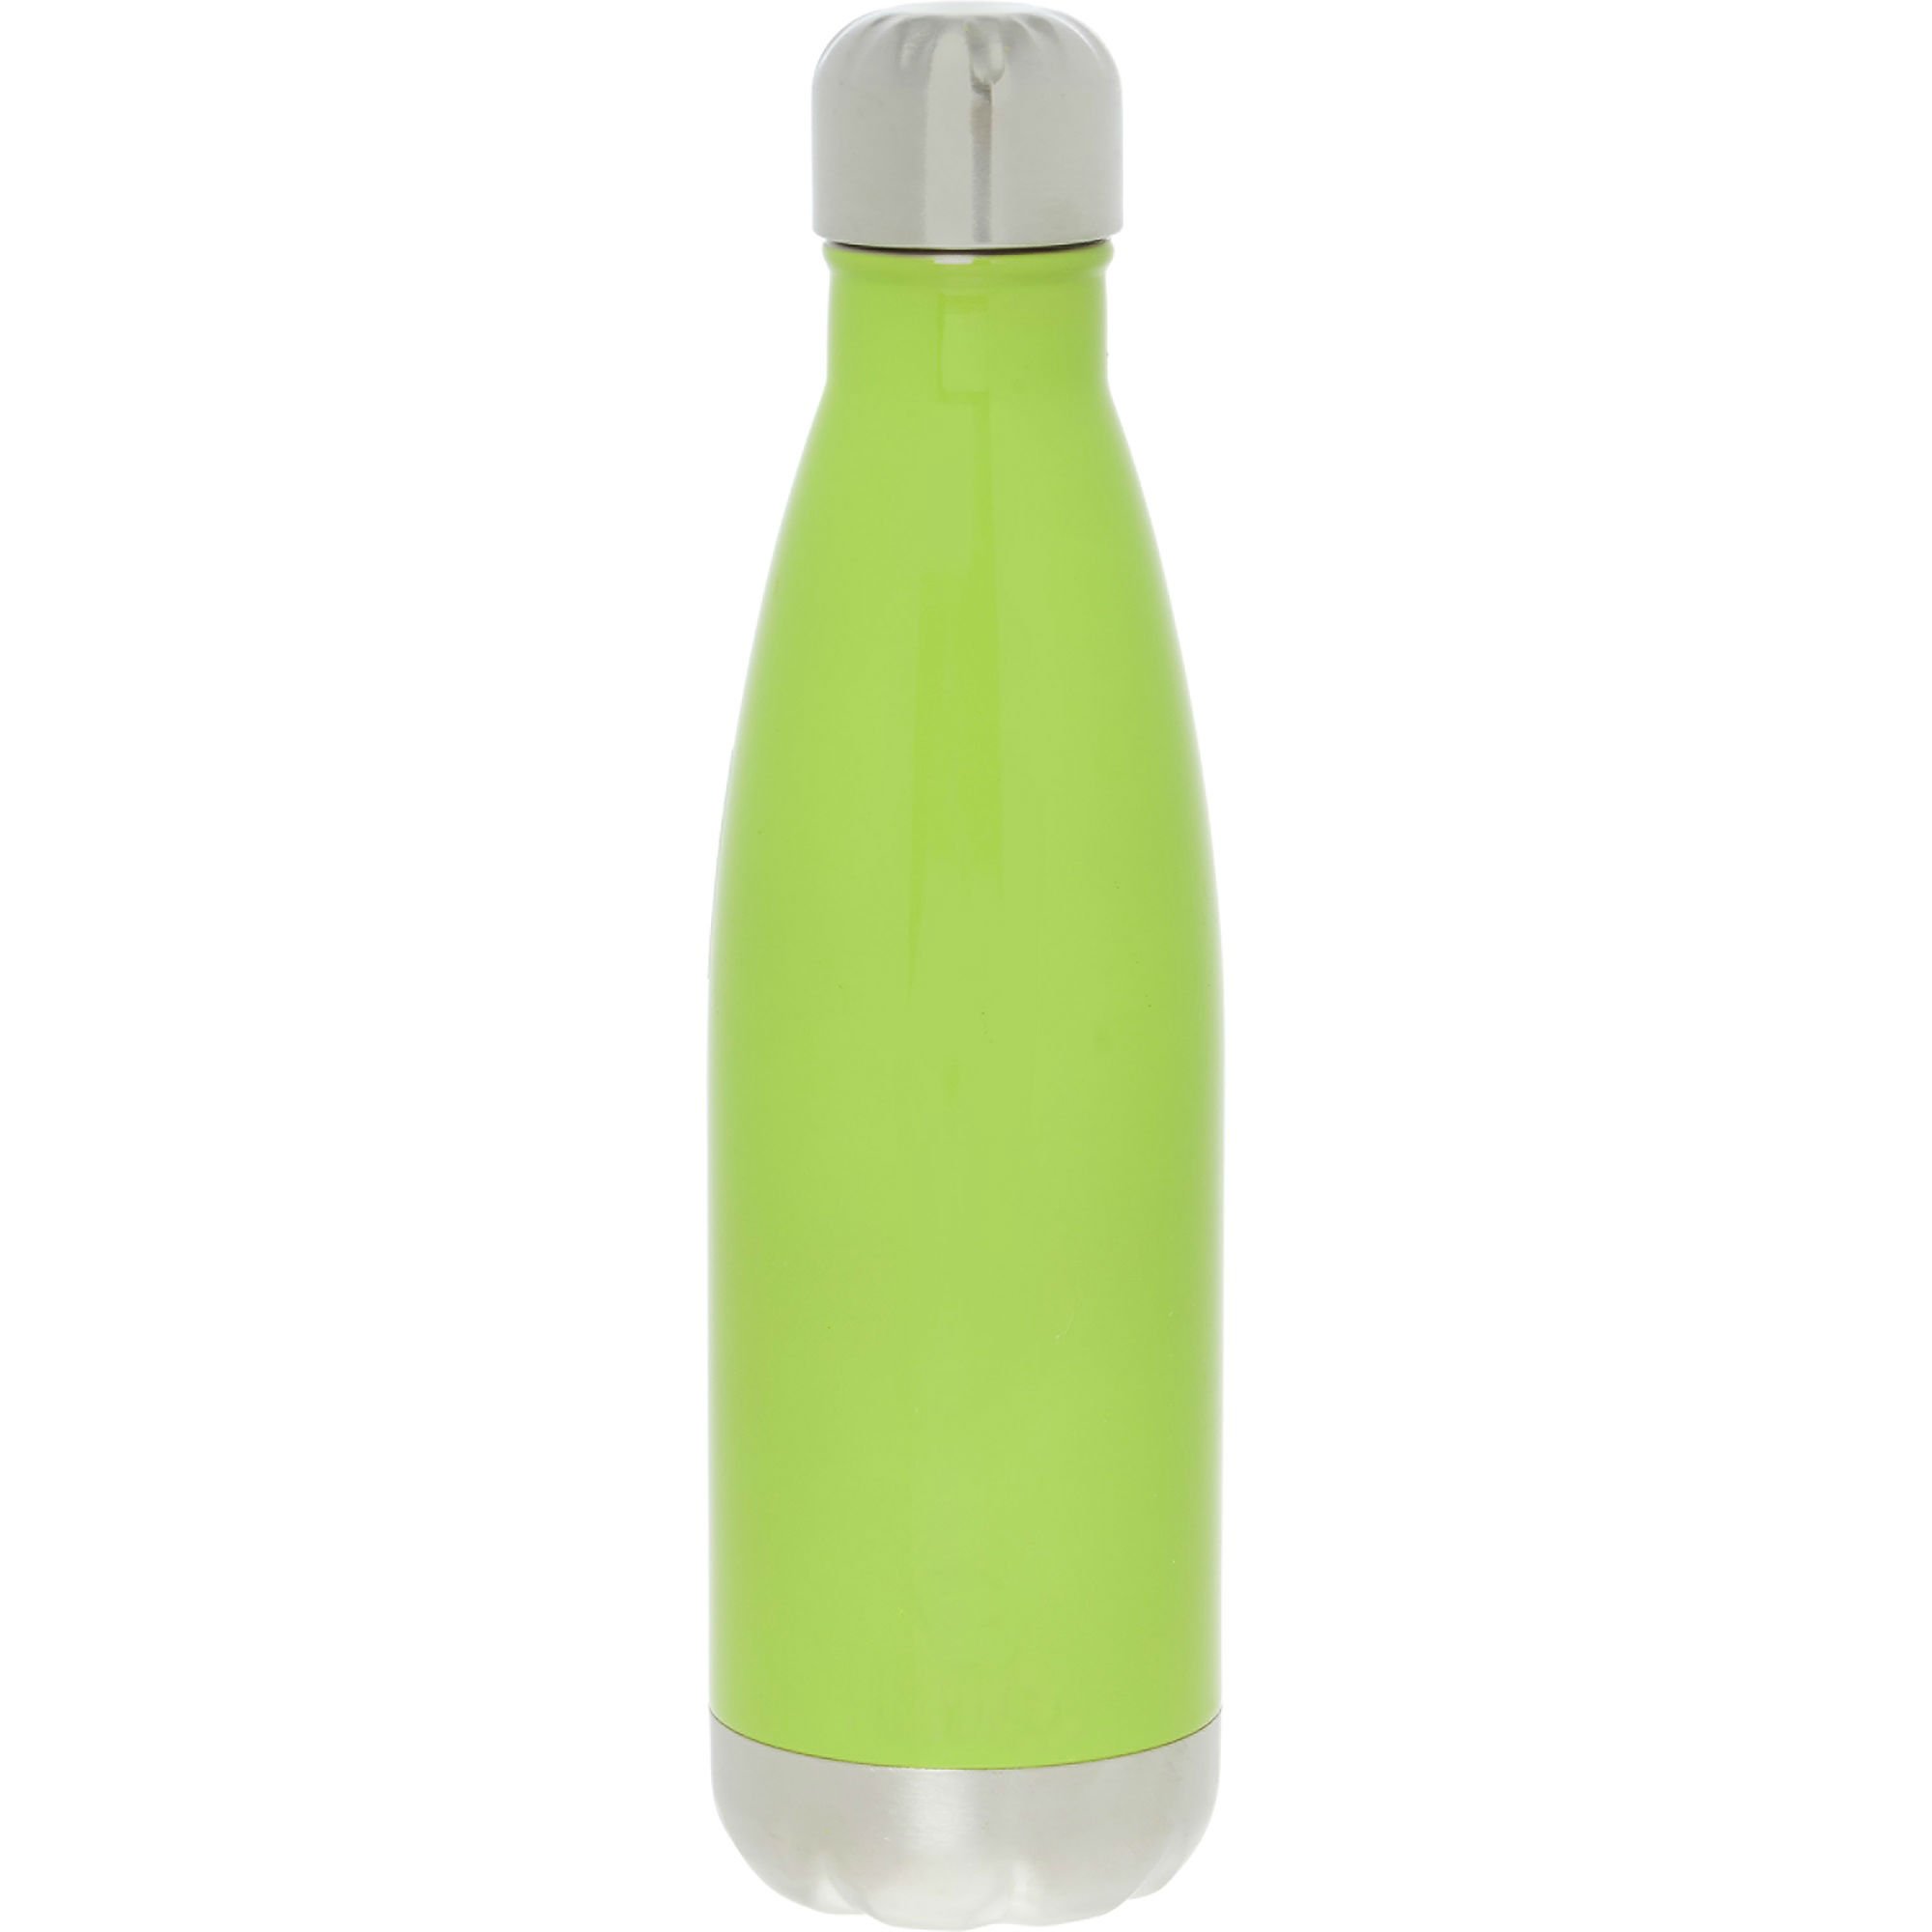 TK MAXX Lime Green Metal Water Bottle €9.99, 